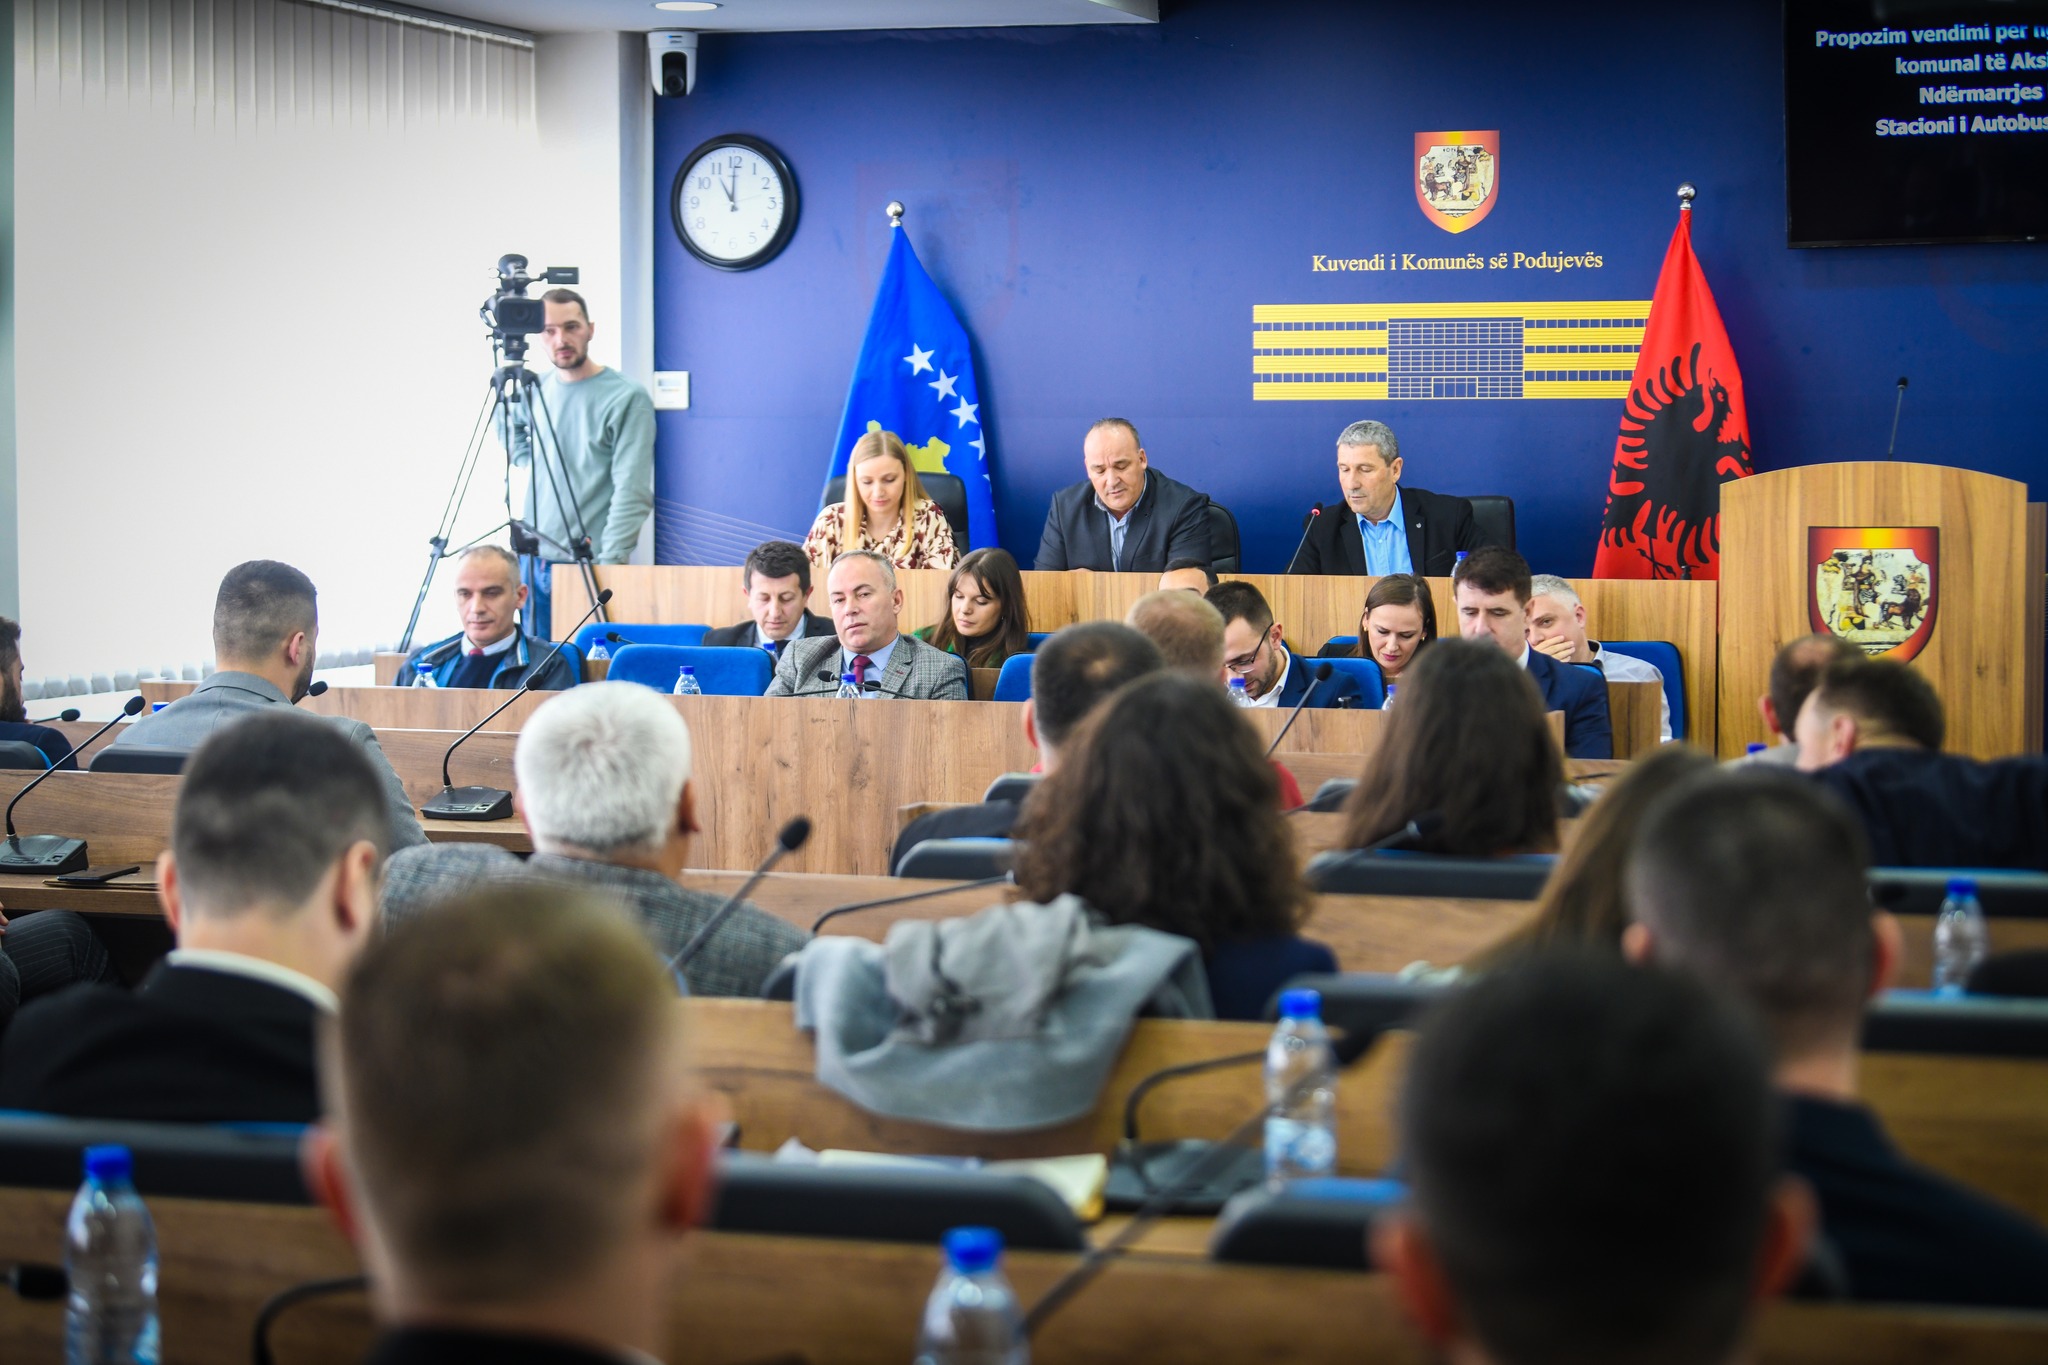  Kuvendi i komunës së Podujevës mbajti mbledhjen e rregullt